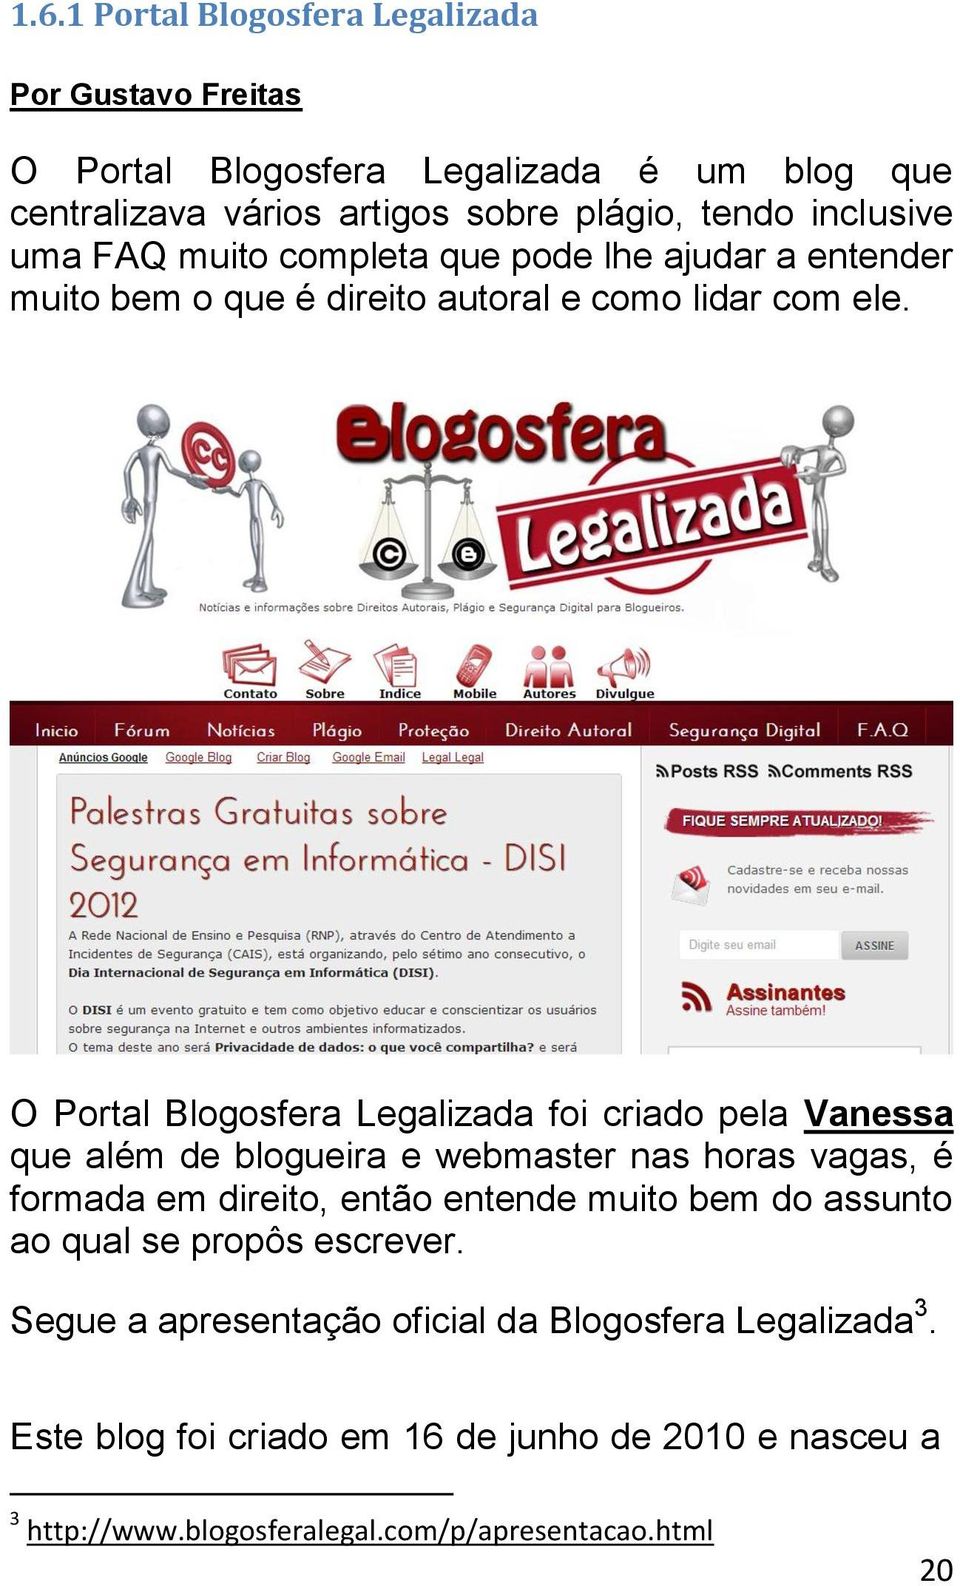 O Portal Blogosfera Legalizada foi criado pela Vanessa que além de blogueira e webmaster nas horas vagas, é formada em direito, então entende muito bem do